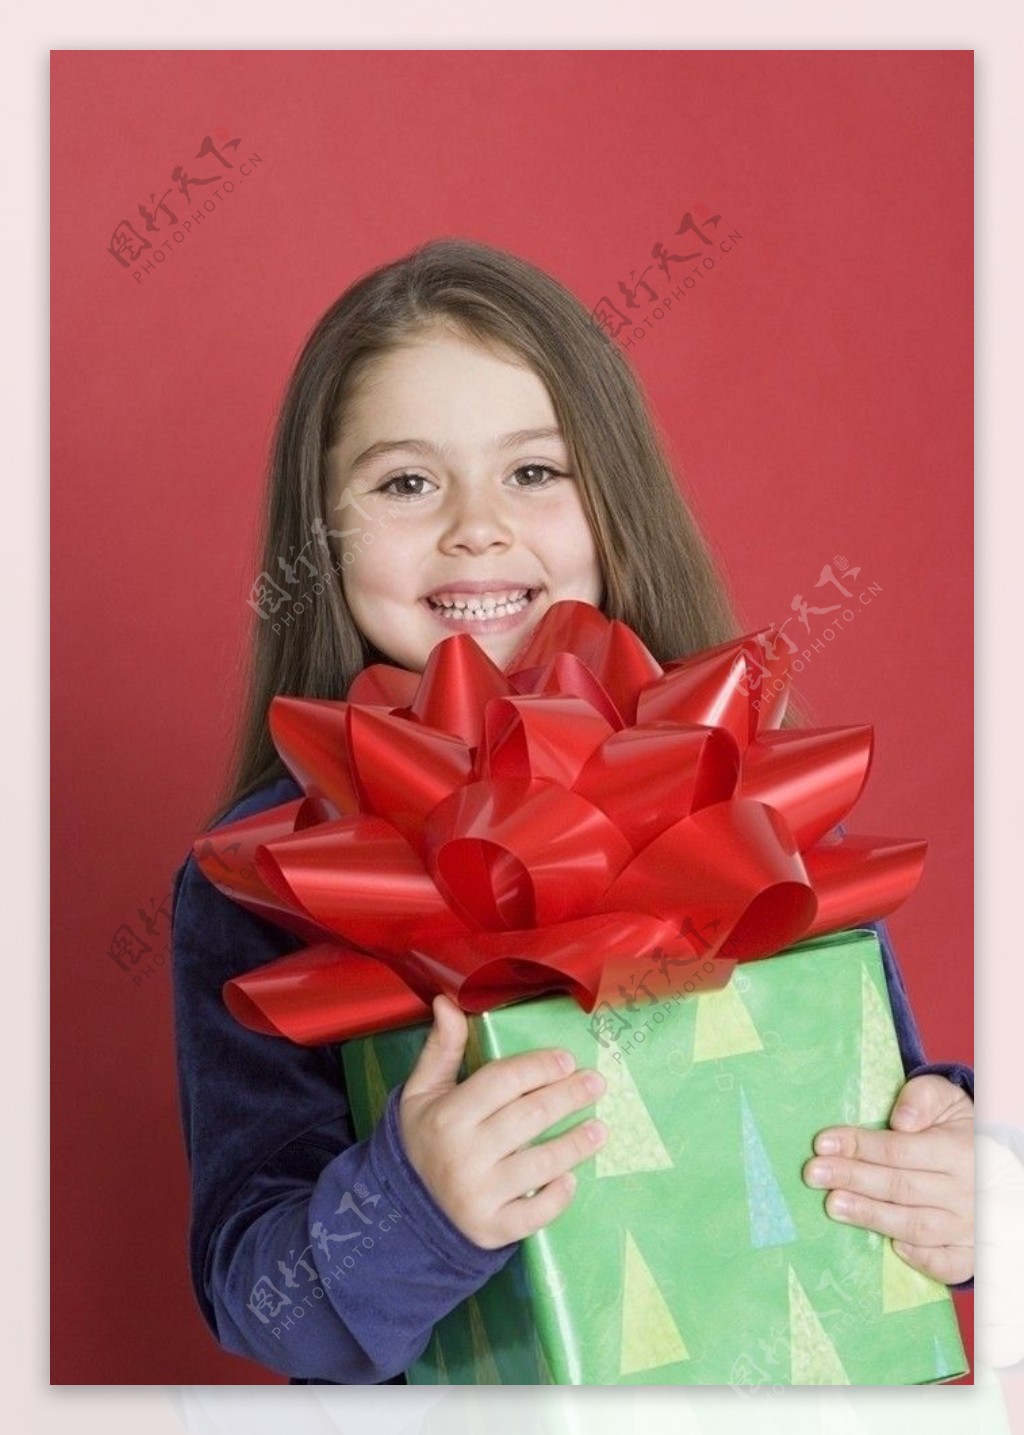 抱着礼品盒的微笑小女孩图片